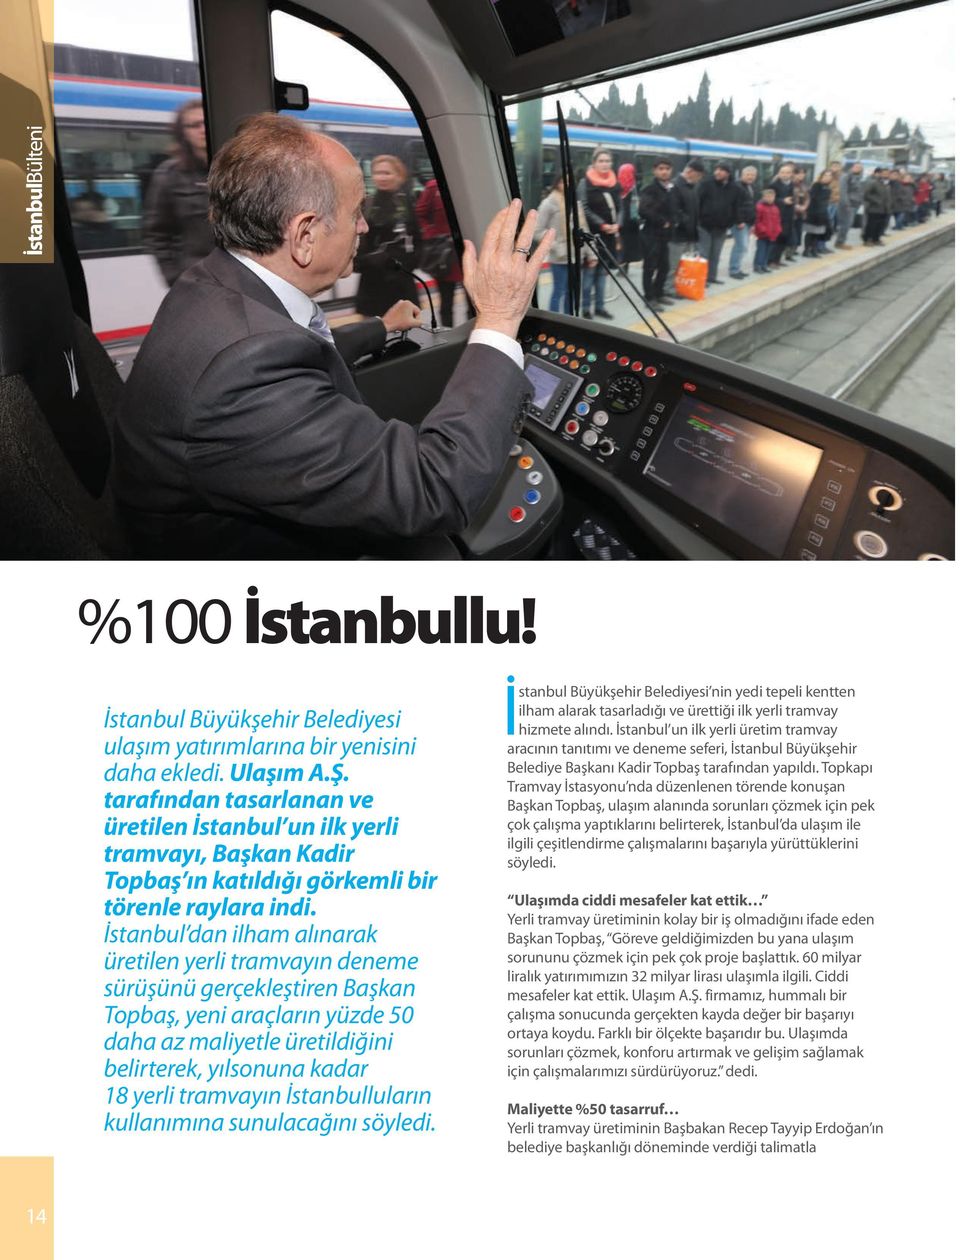 İstanbul dan ilham alınarak üretilen yerli tramvayın deneme sürüşünü gerçekleştiren Başkan Topbaş, yeni araçların yüzde 50 daha az maliyetle üretildiğini belirterek, yılsonuna kadar 18 yerli